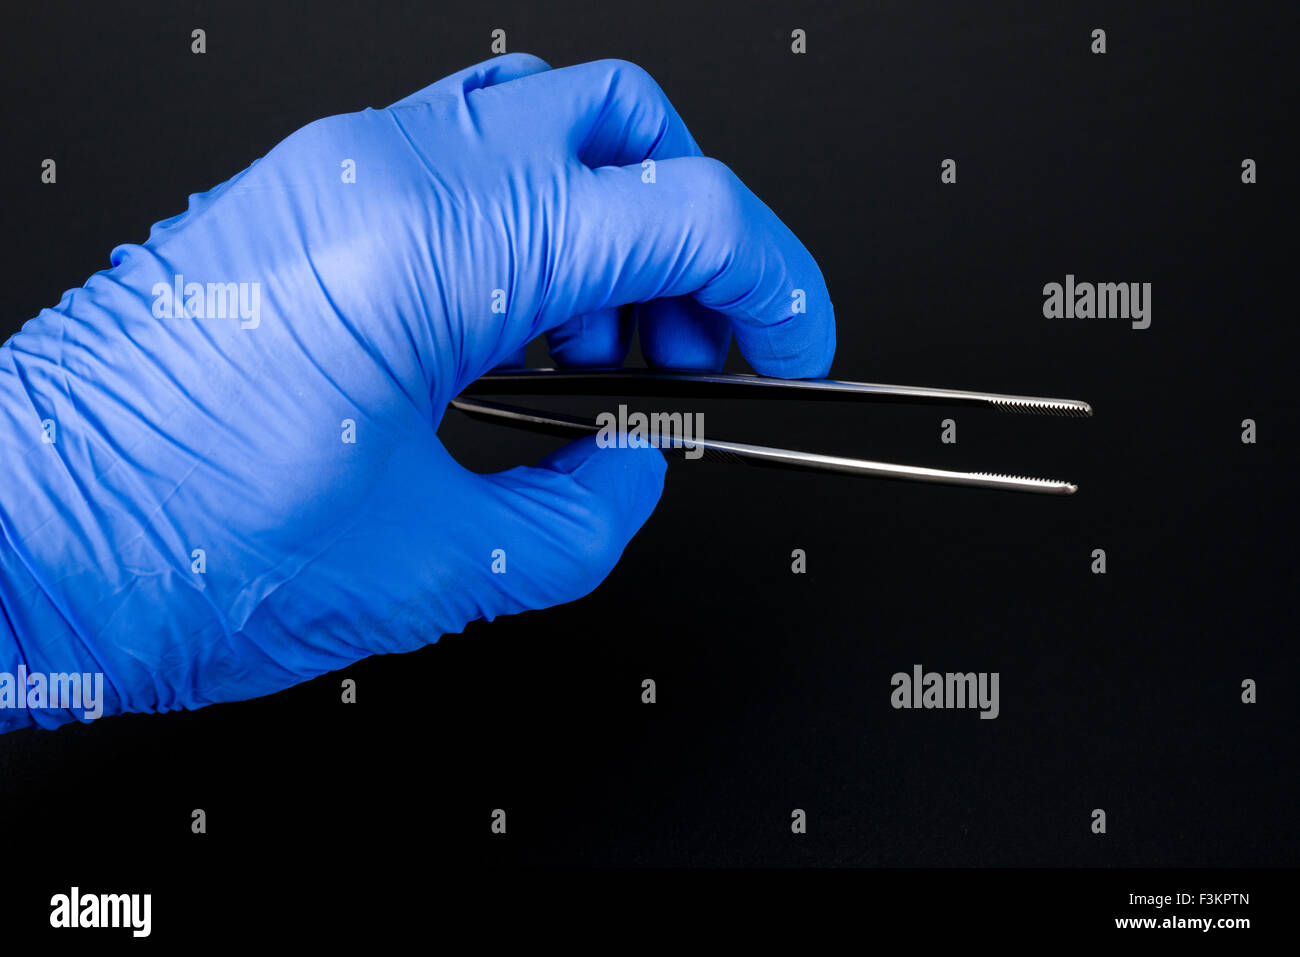 Une main dans un gant médical bleu organise une brucelles à usage médical, affichée sur un tableau noir Banque D'Images